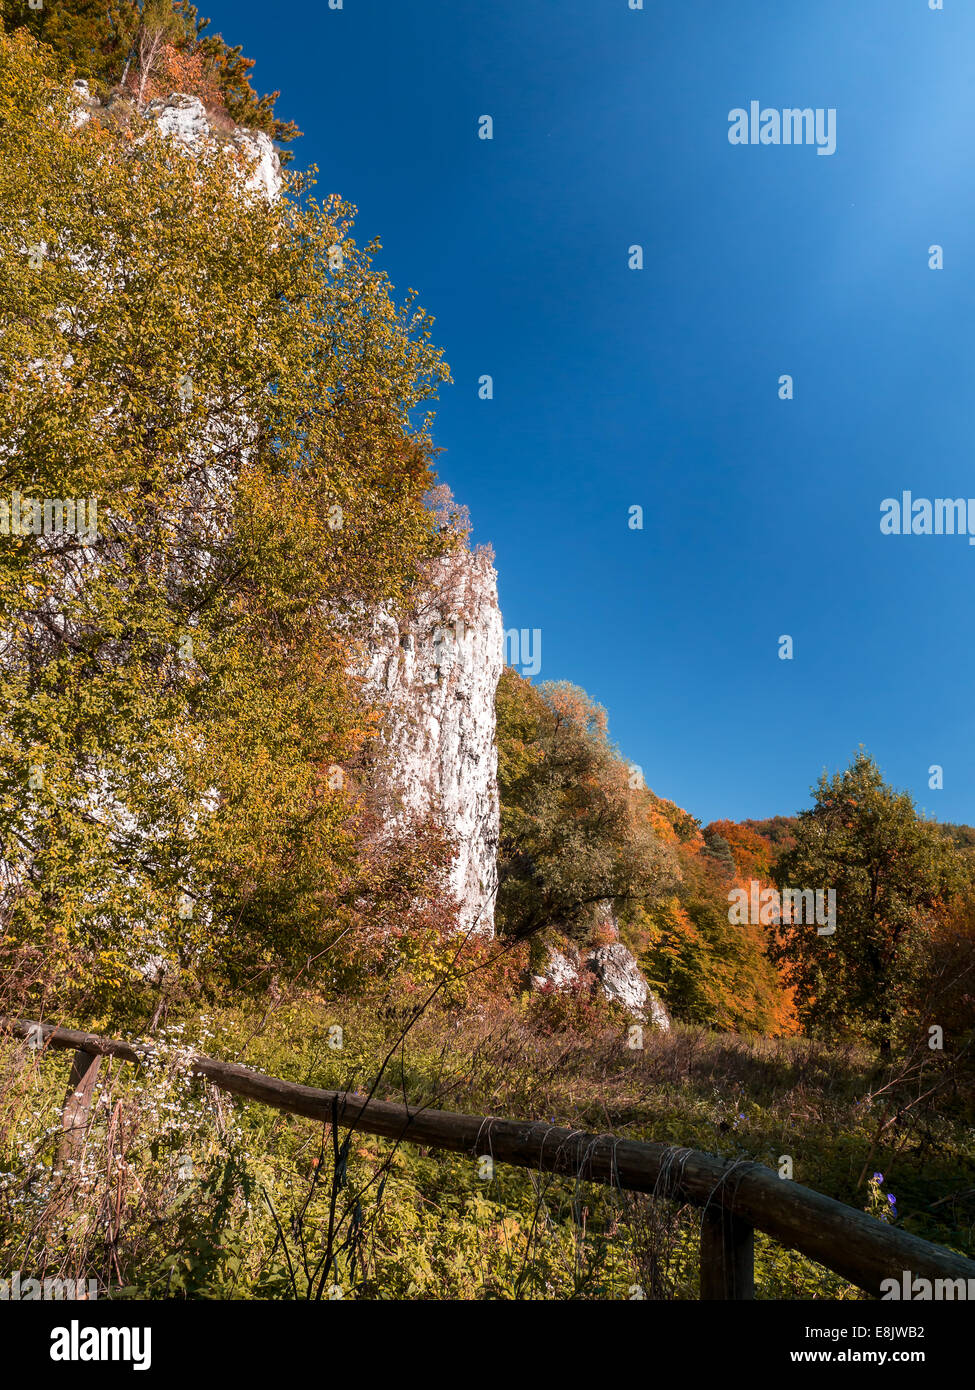 Ojcow National Park with limestone rocks in autumn time, part of Krakow-Czestochowa Upland, Poland Stock Photo